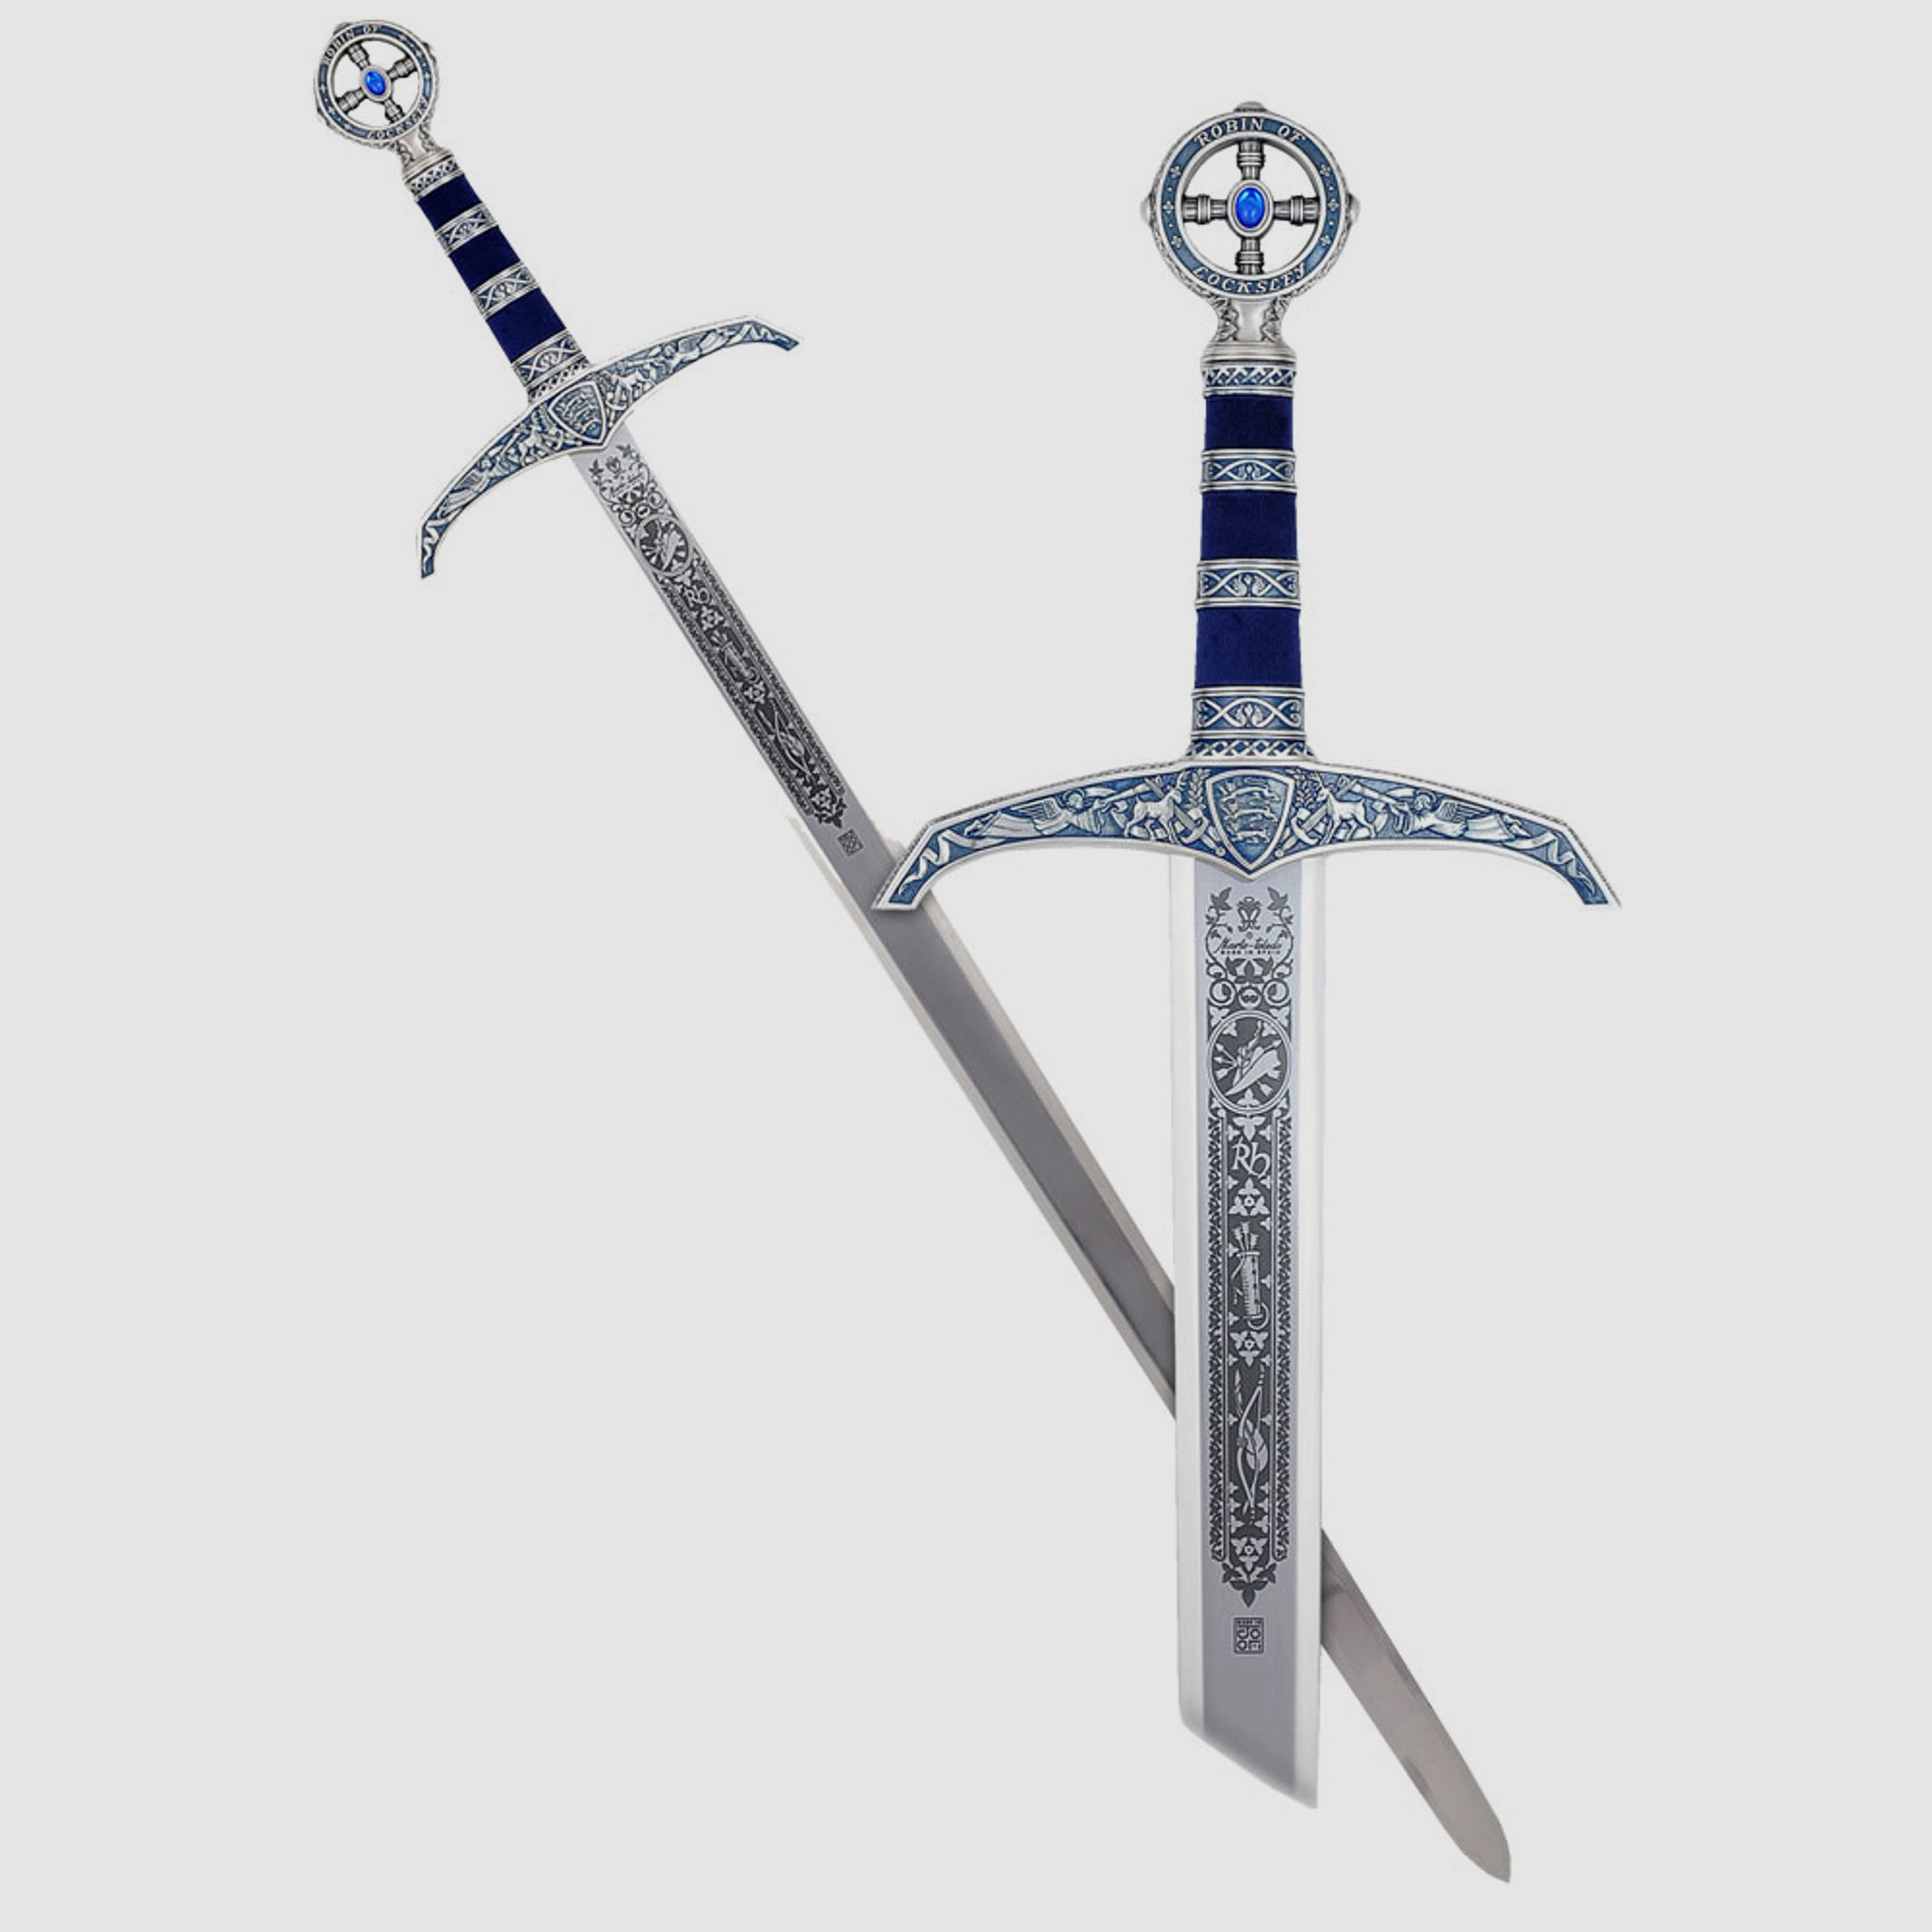 Schwert Robin Hood silber/blau